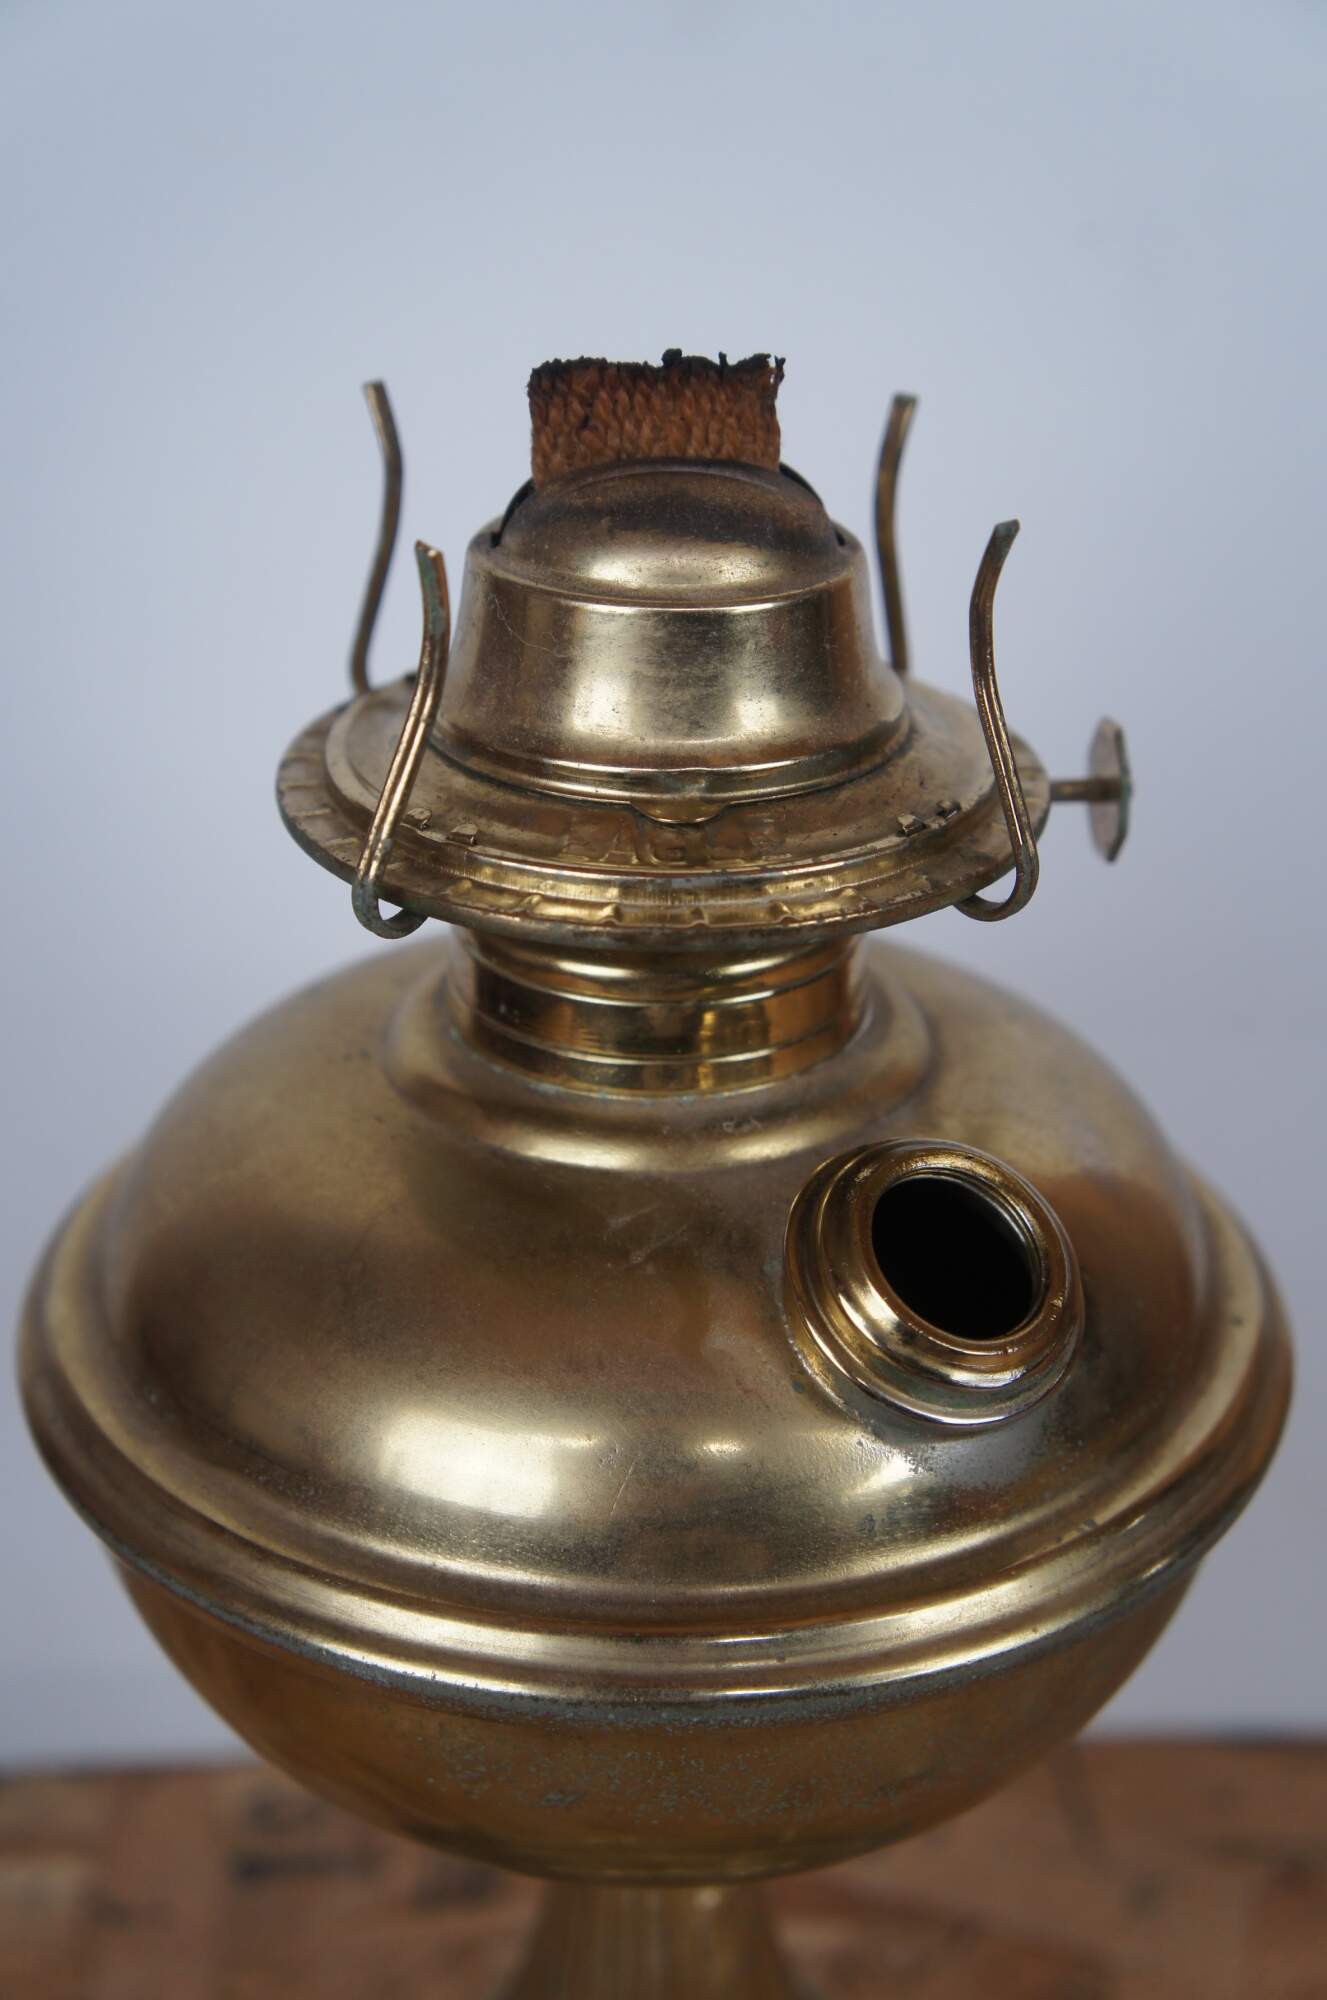 Brass Oil Lamp, Vintage French Kerosene Lantern Restored, Storm Lantern 